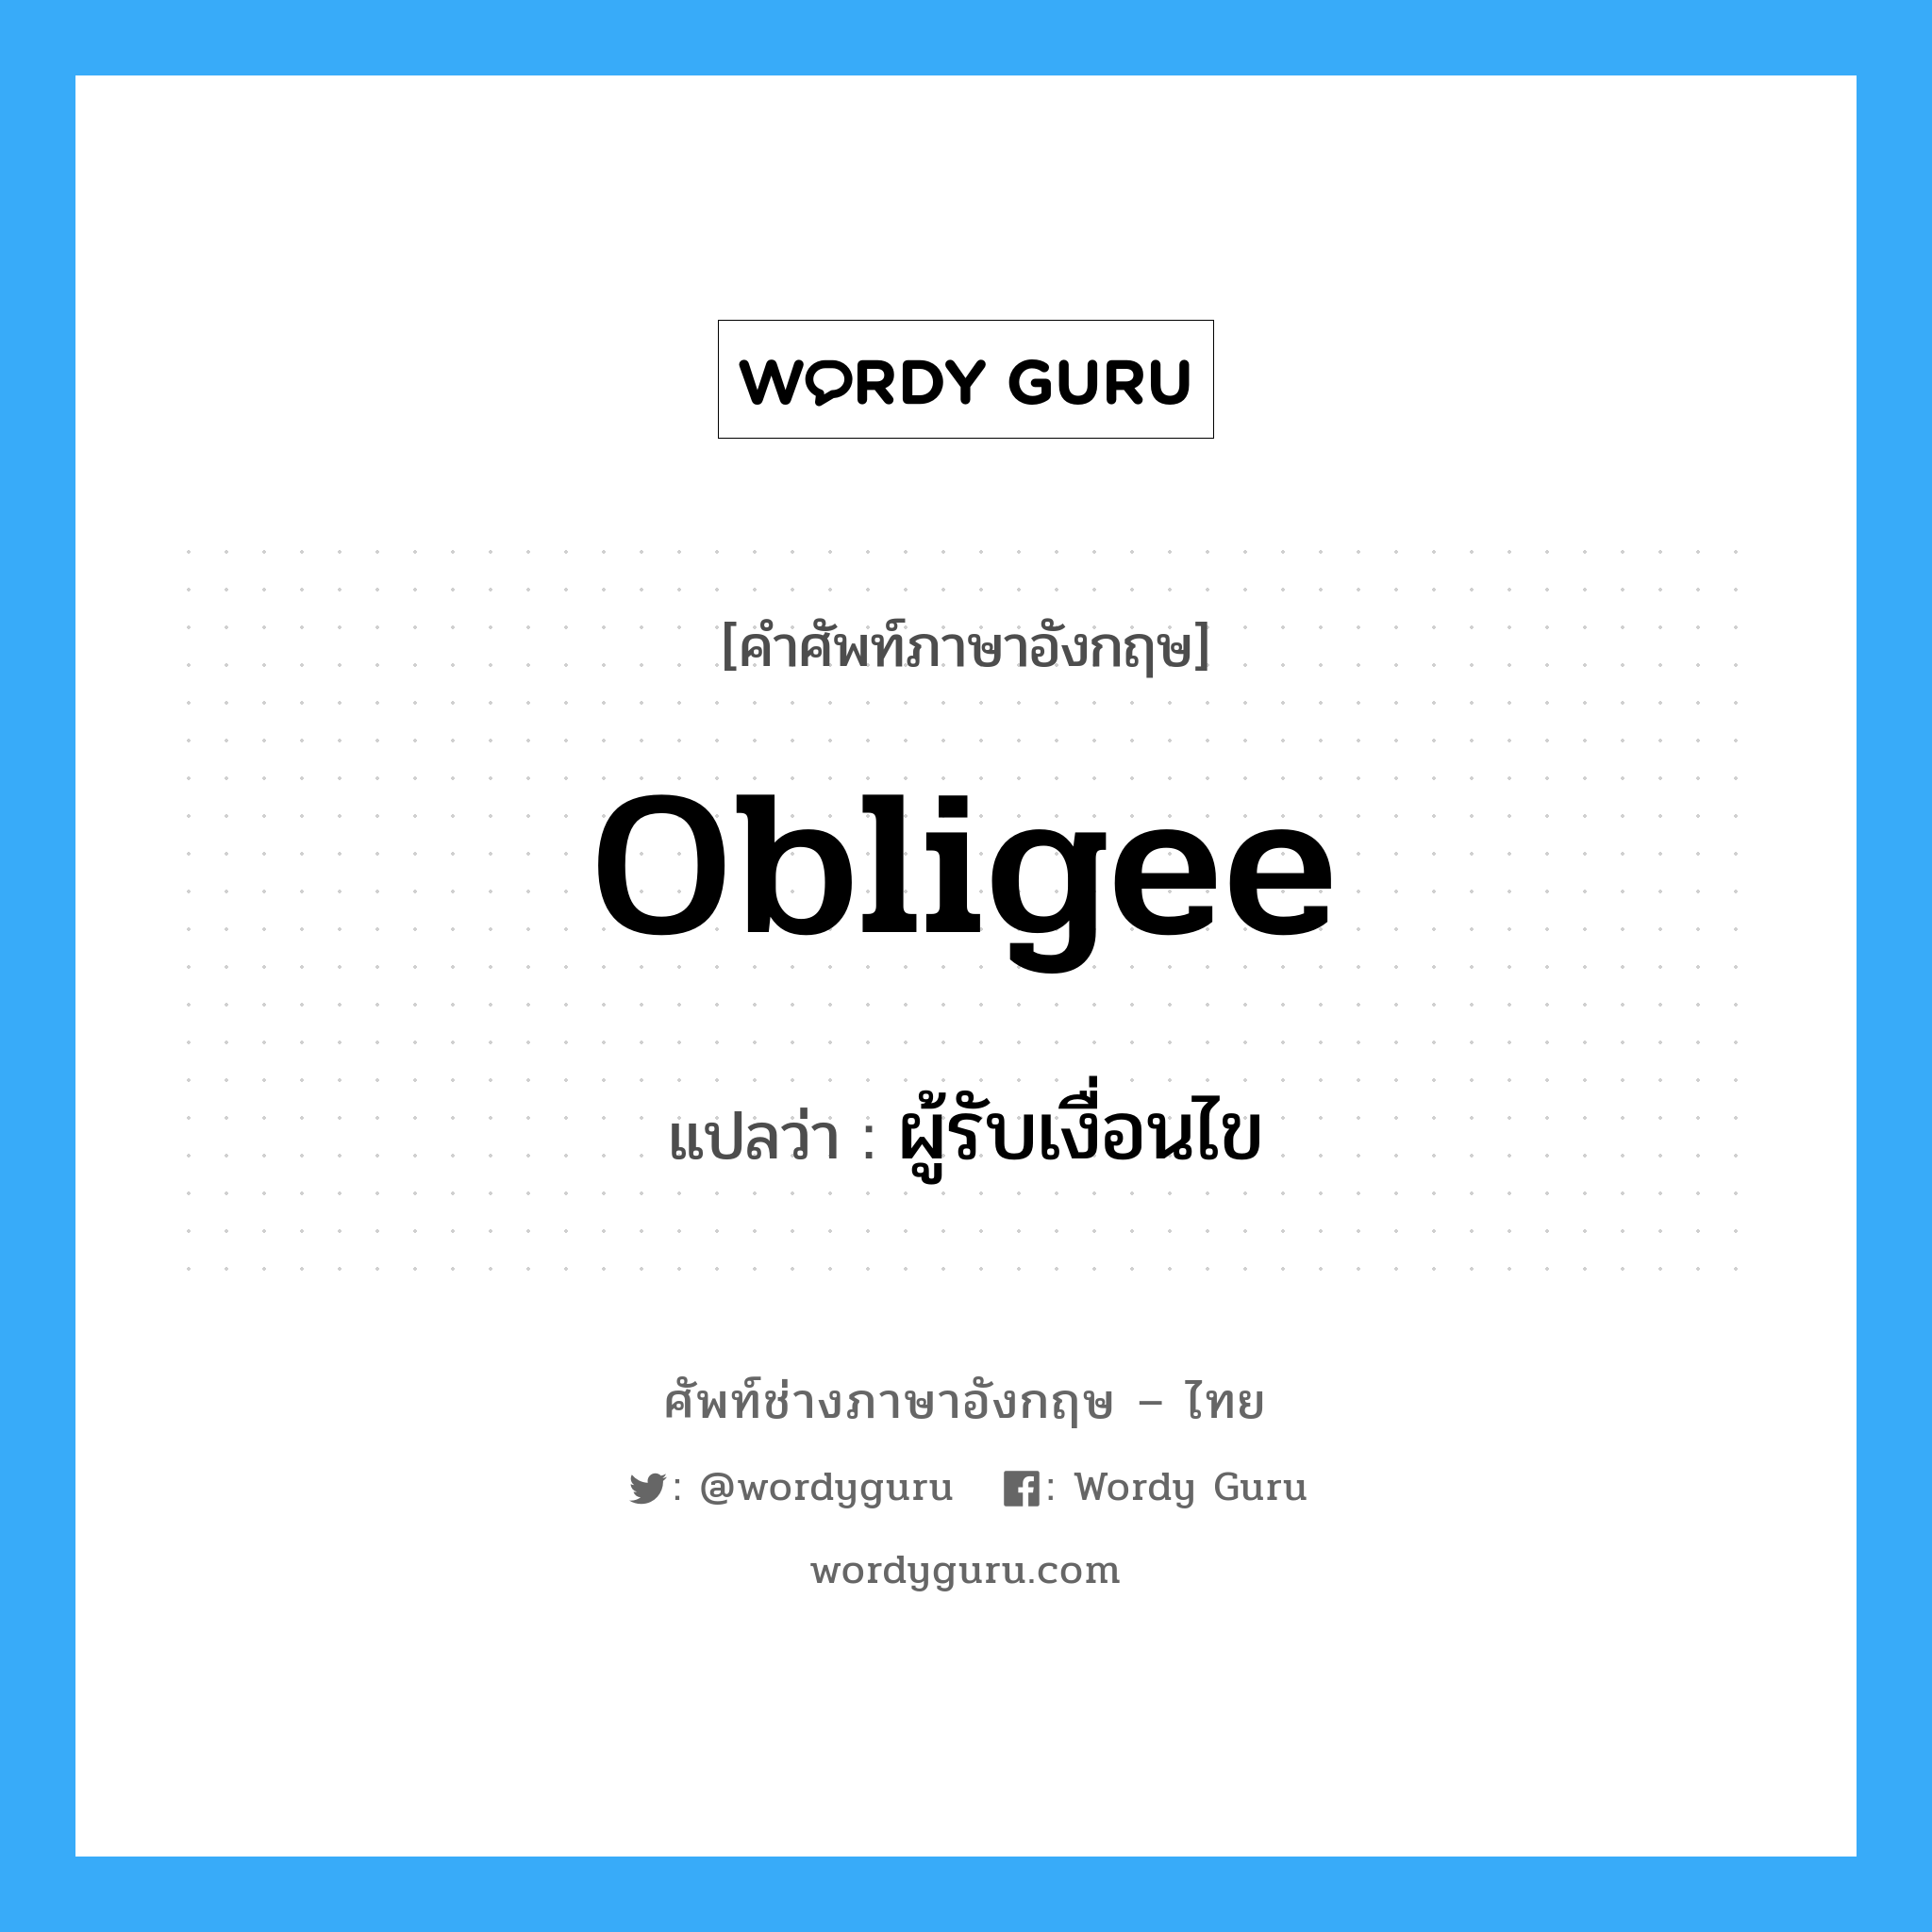 Obligee แปลว่า?, คำศัพท์ช่างภาษาอังกฤษ - ไทย Obligee คำศัพท์ภาษาอังกฤษ Obligee แปลว่า ผู้รับเงื่อนไข